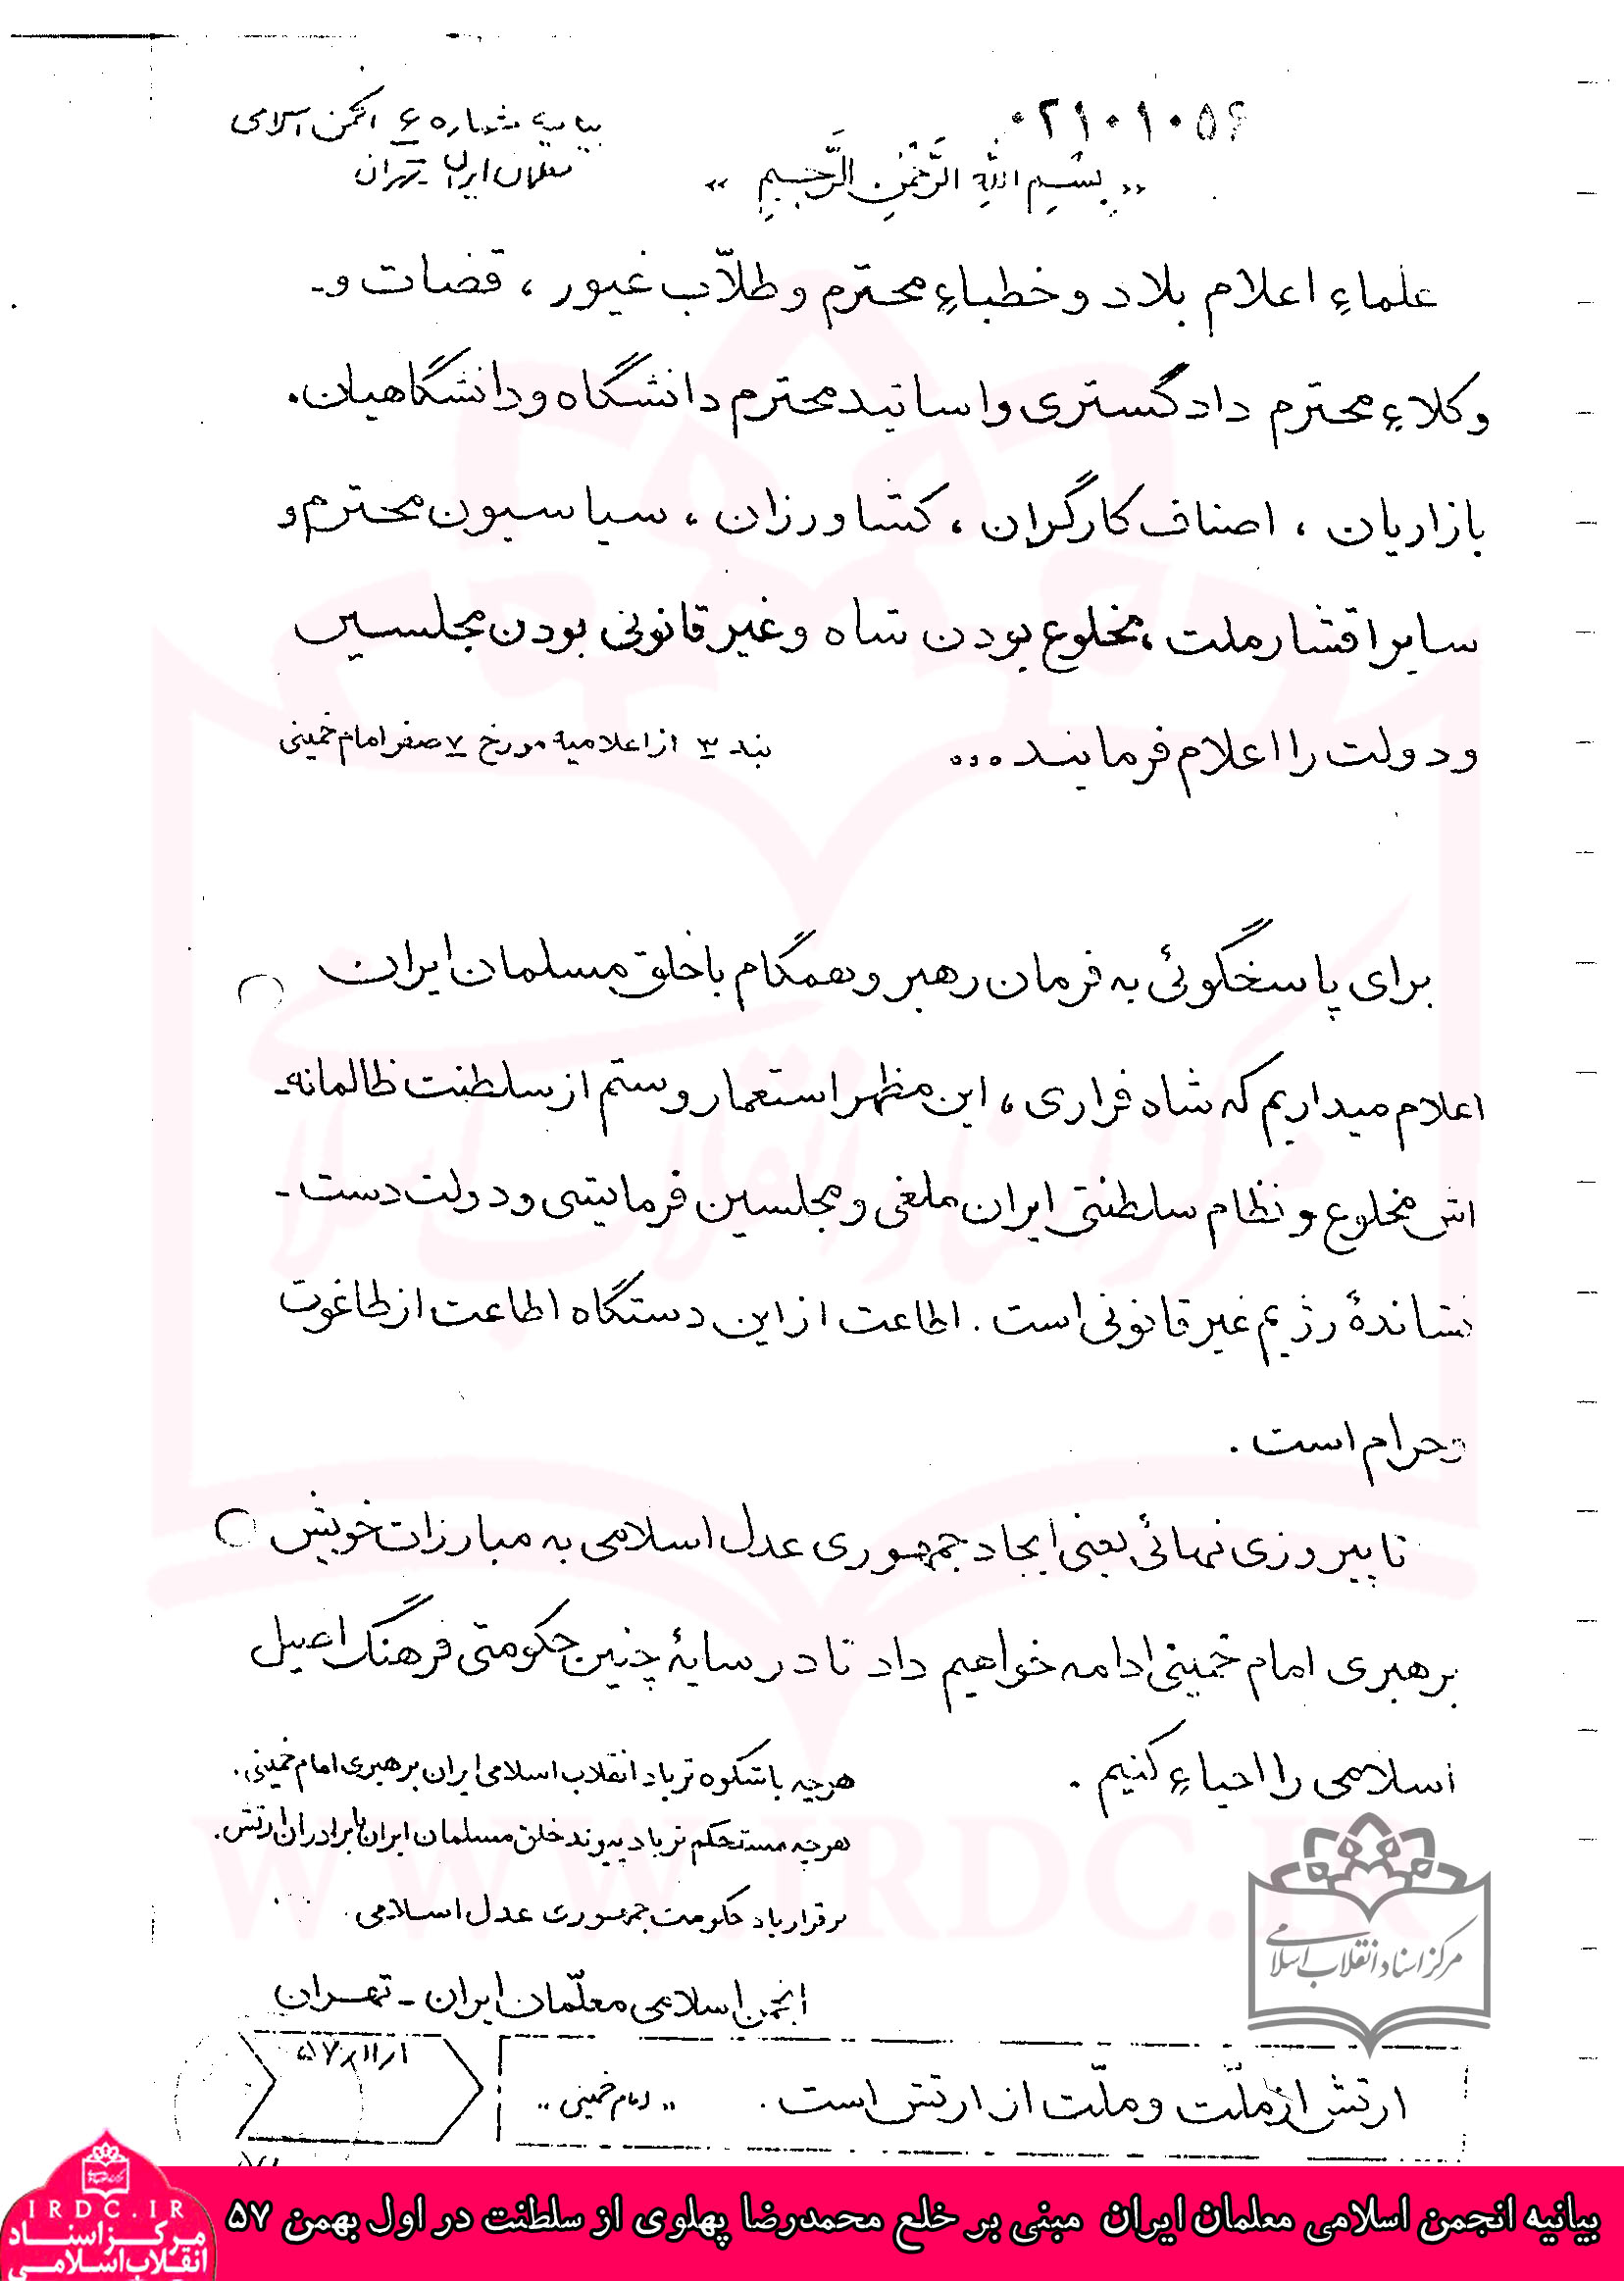 بیانیه انجمن اسلامی معلمان ایران مبنی بر خلع محمدرضا پهلوی